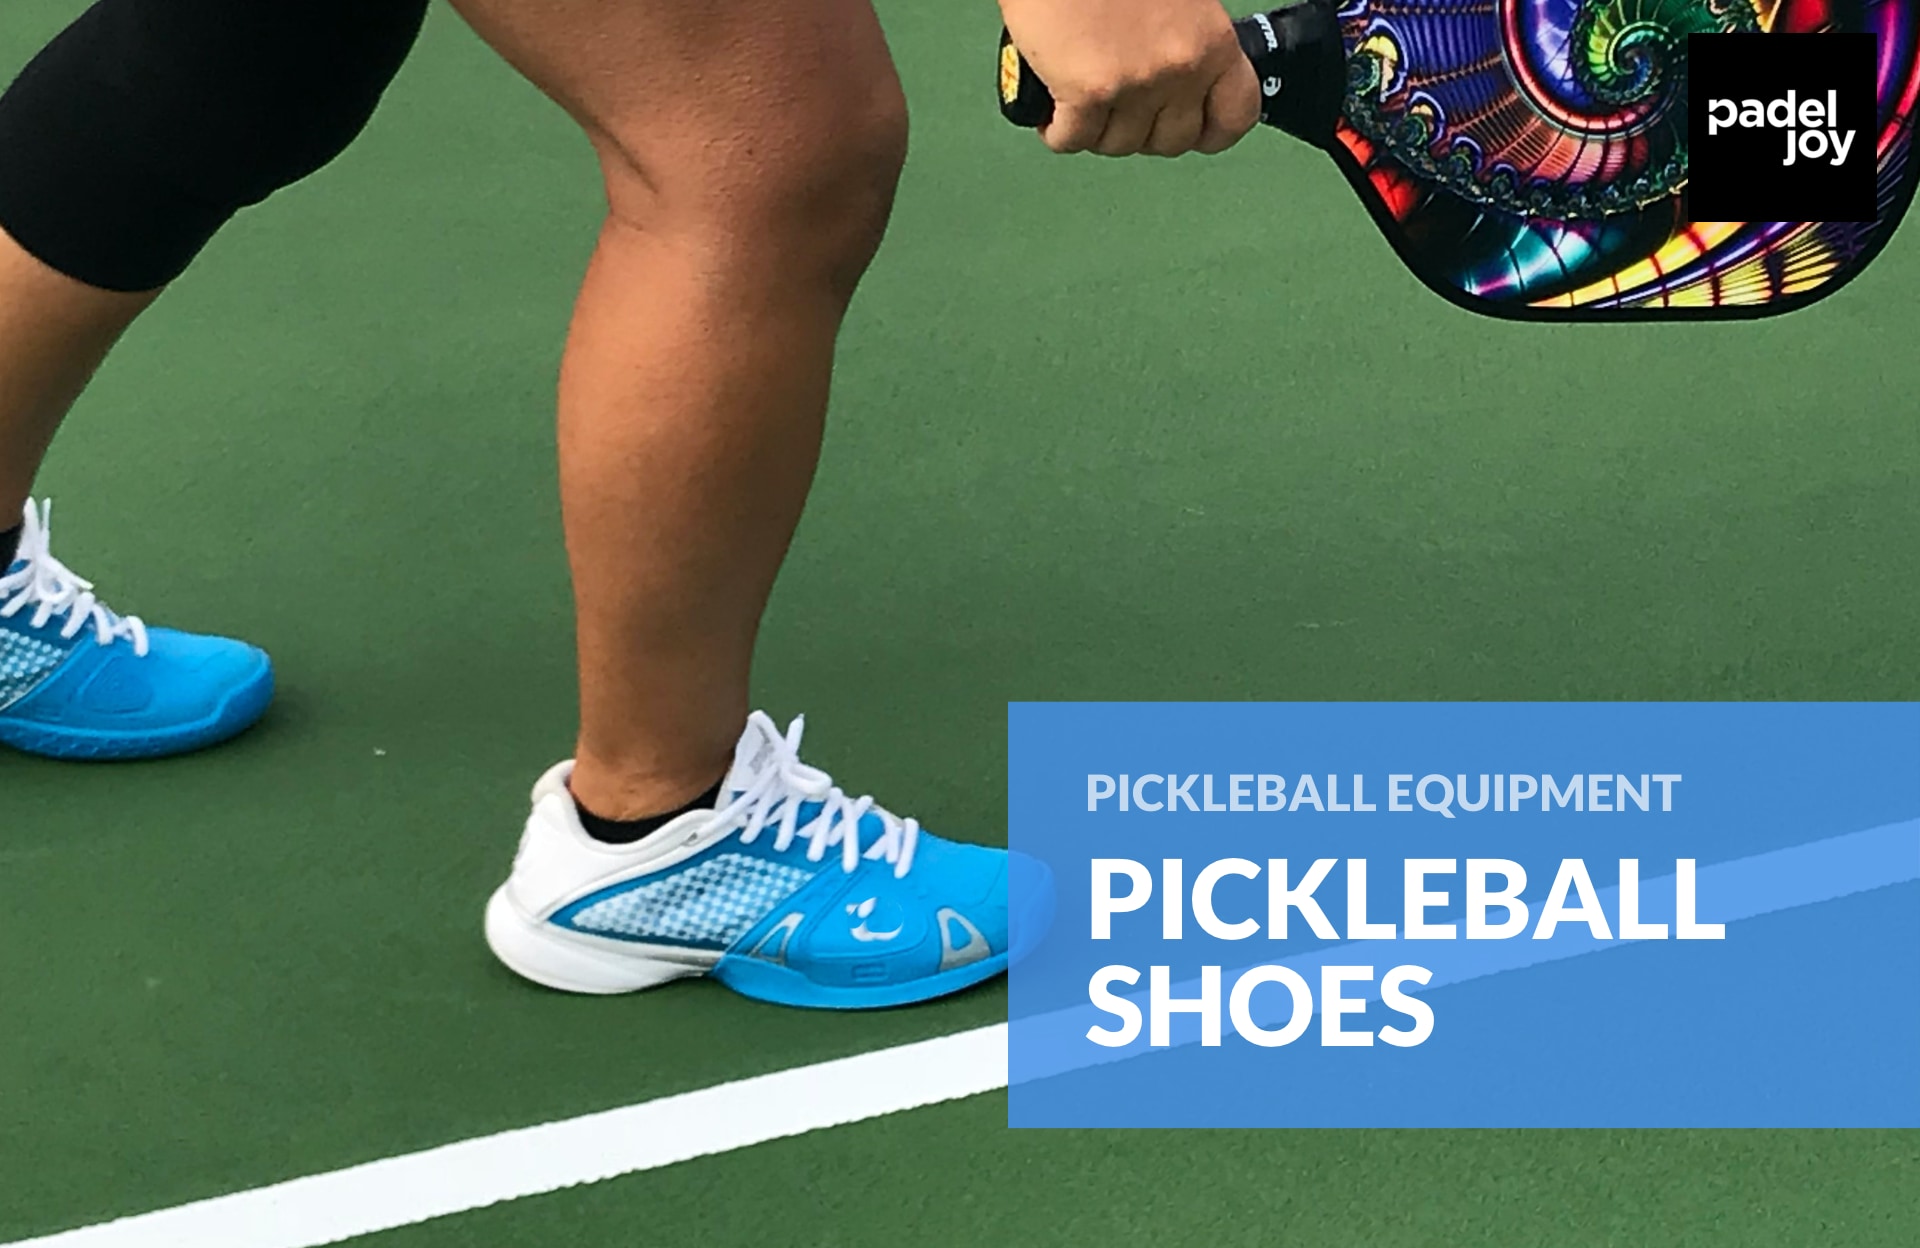 Pickleball beginner using court shoes.